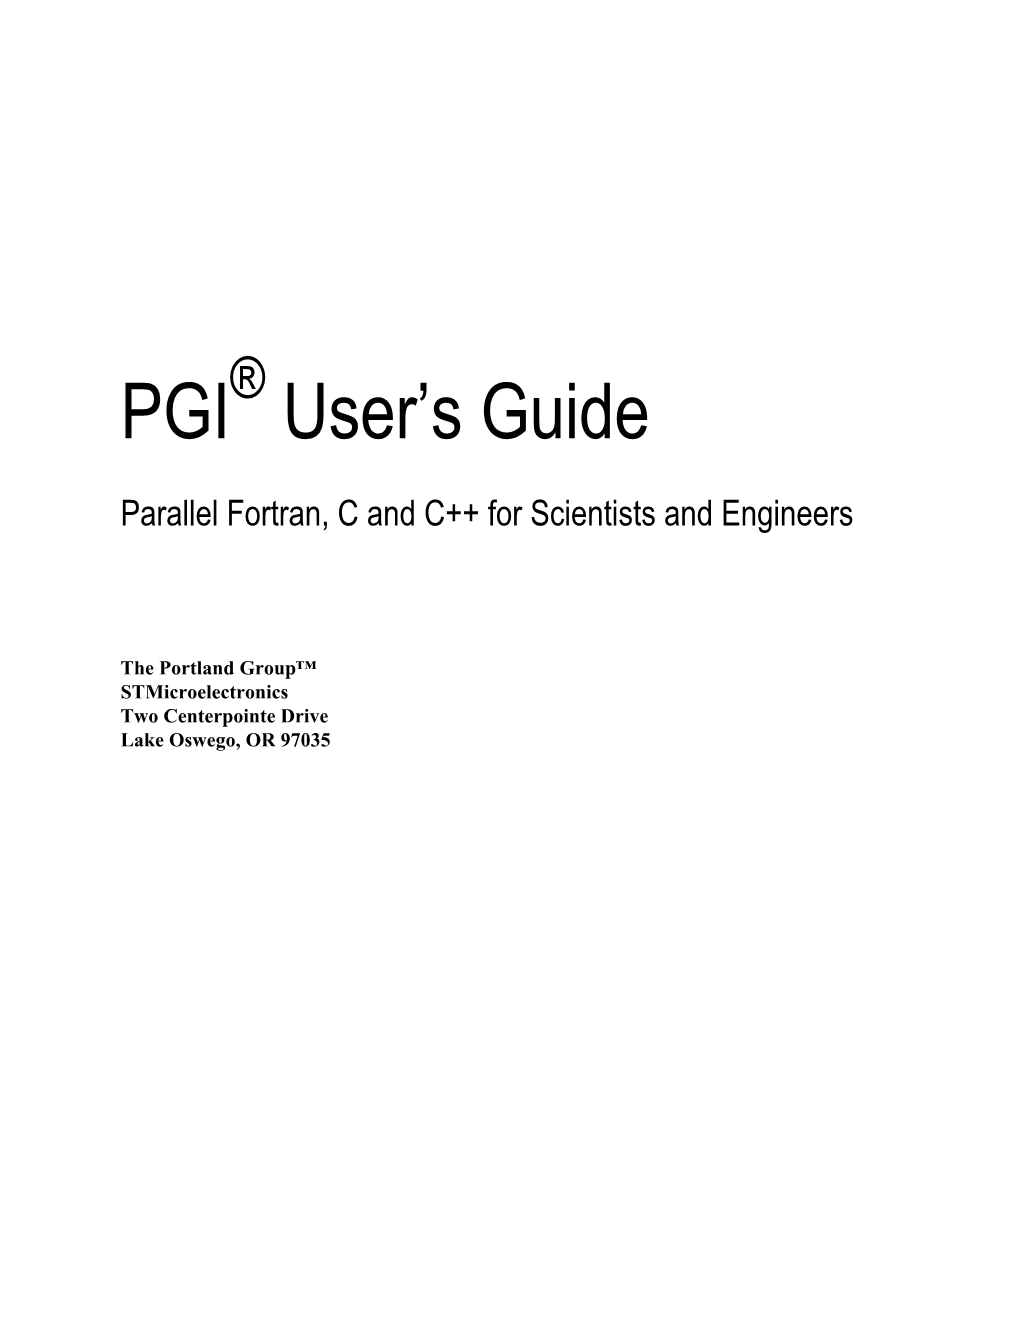 PGI User's Guide Provides Operating Instructions for the PGI Command-Level Development Environment